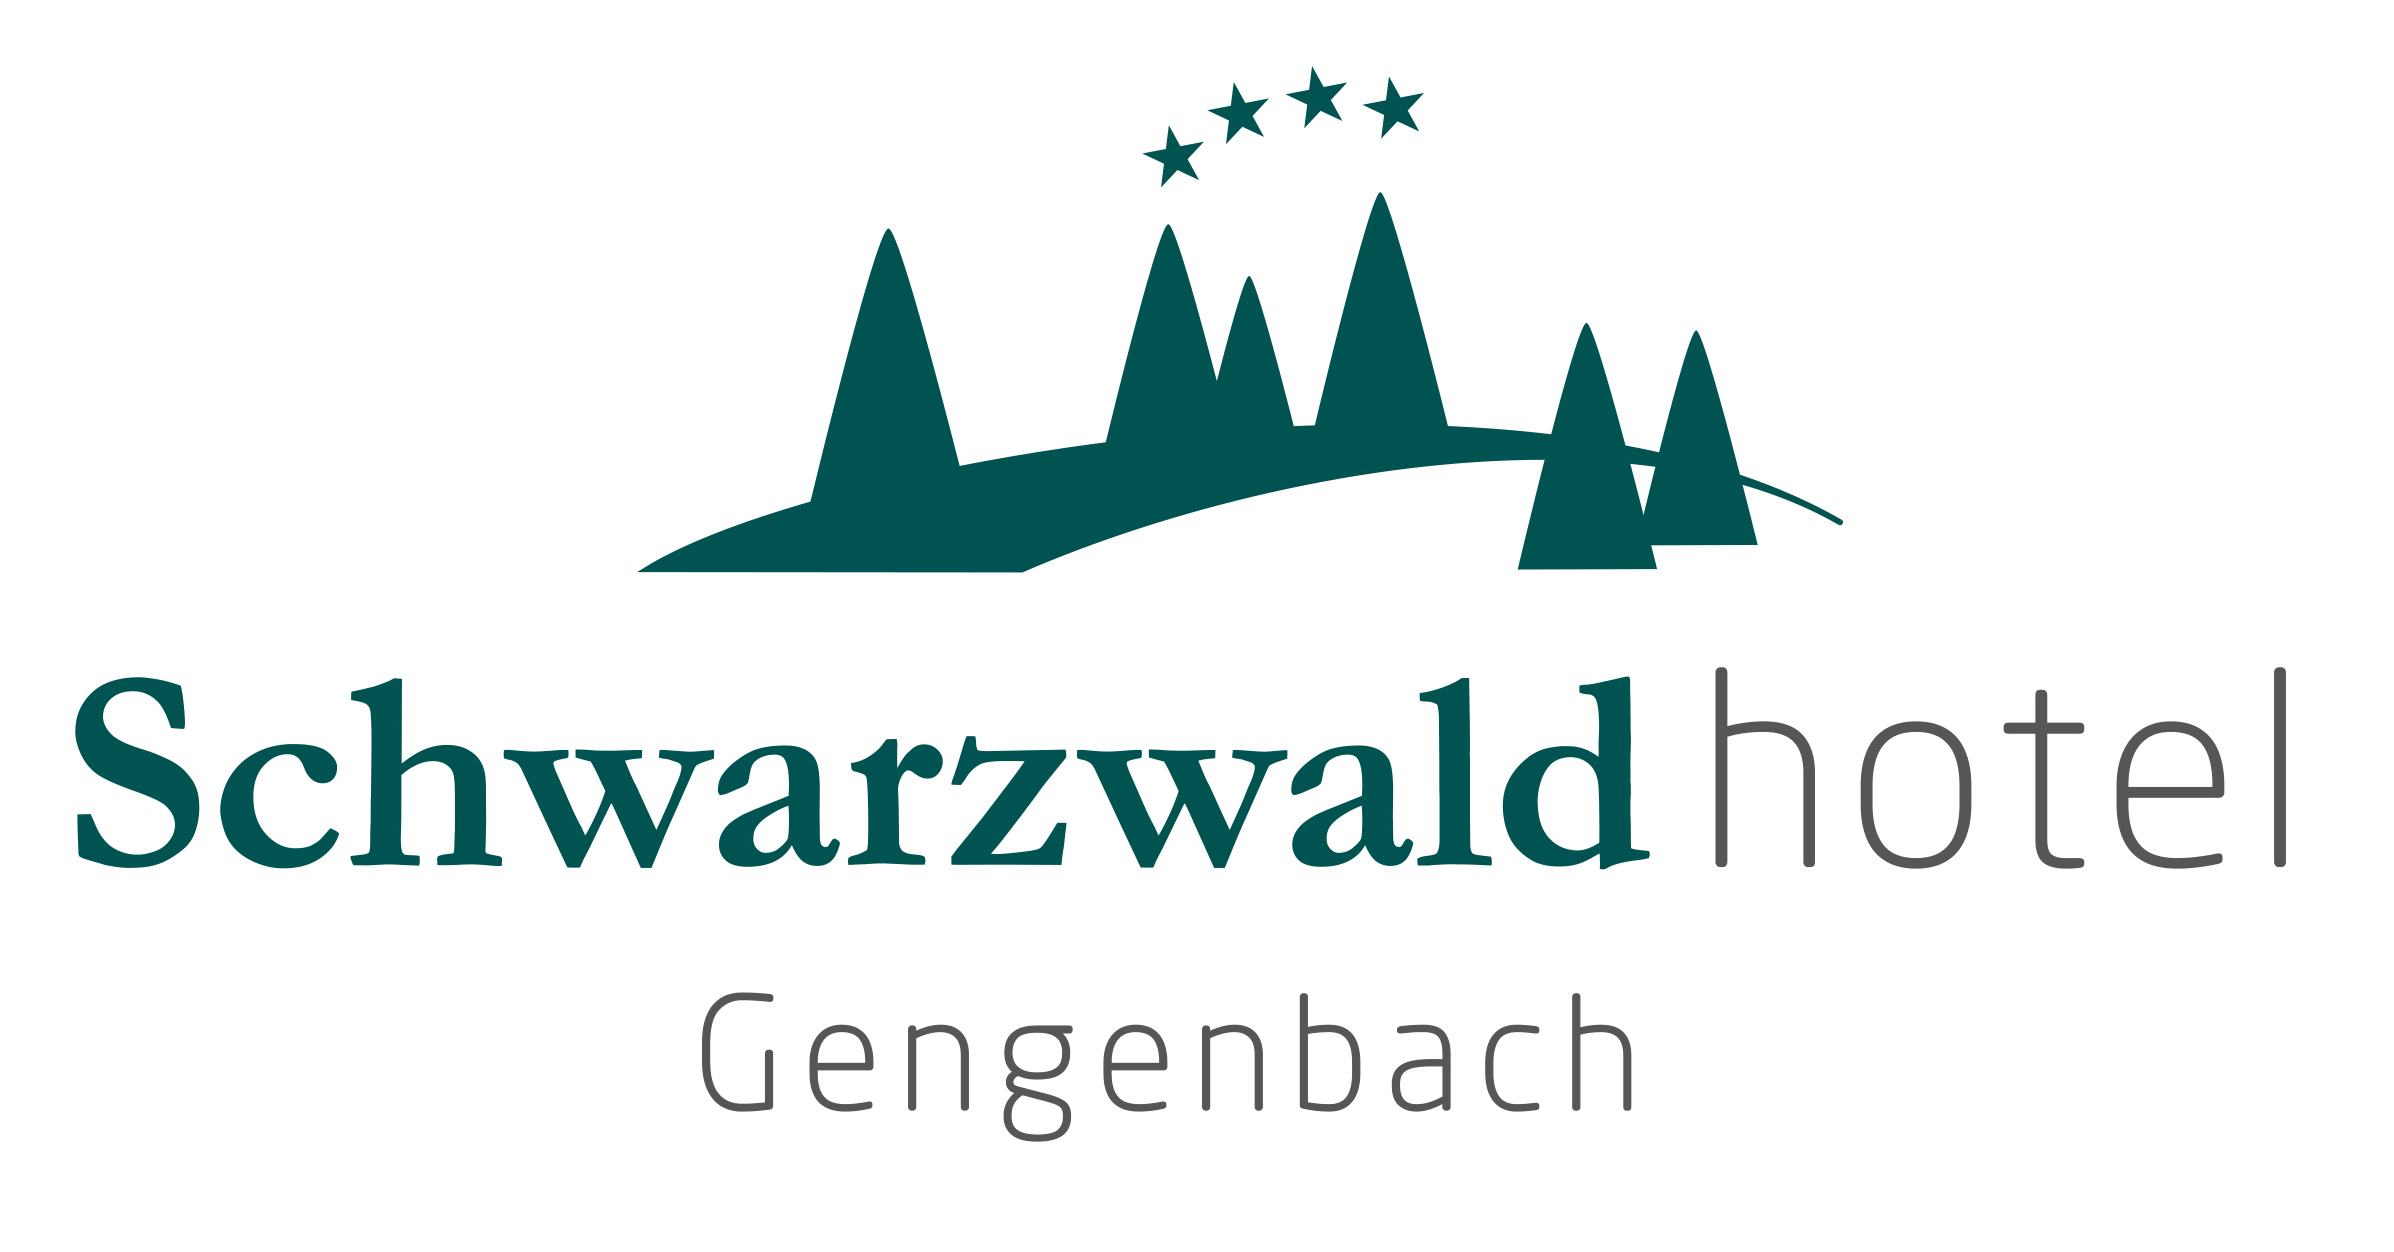 Schwarzwald Hotel Gengenbach Geschäftsführungs GmbH Impression